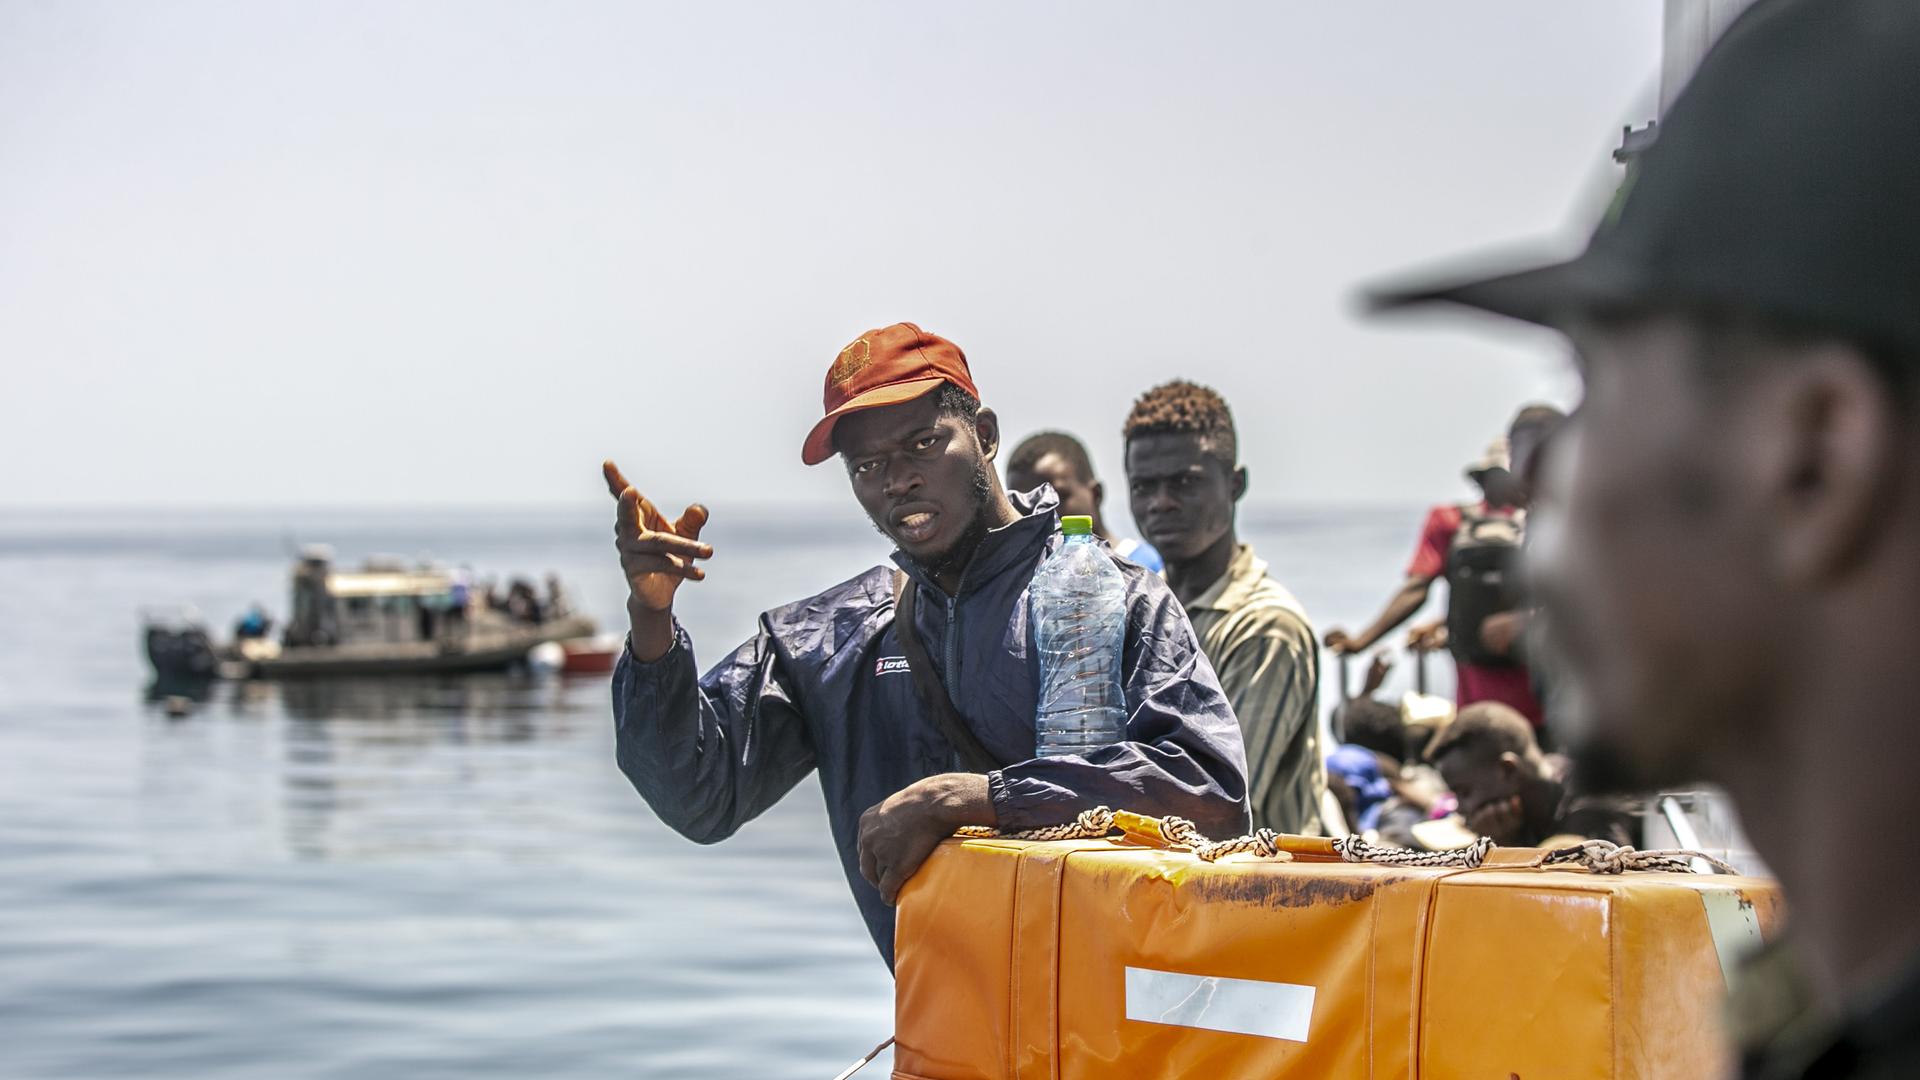 
Zu sehen ist die Küstenwache der tunesischen Nationalgardebei einem Einsatz vor der Stadt Sfax gegen Migranten durchführt, die Europa über das Mittelmeer erreichen wollen. 




